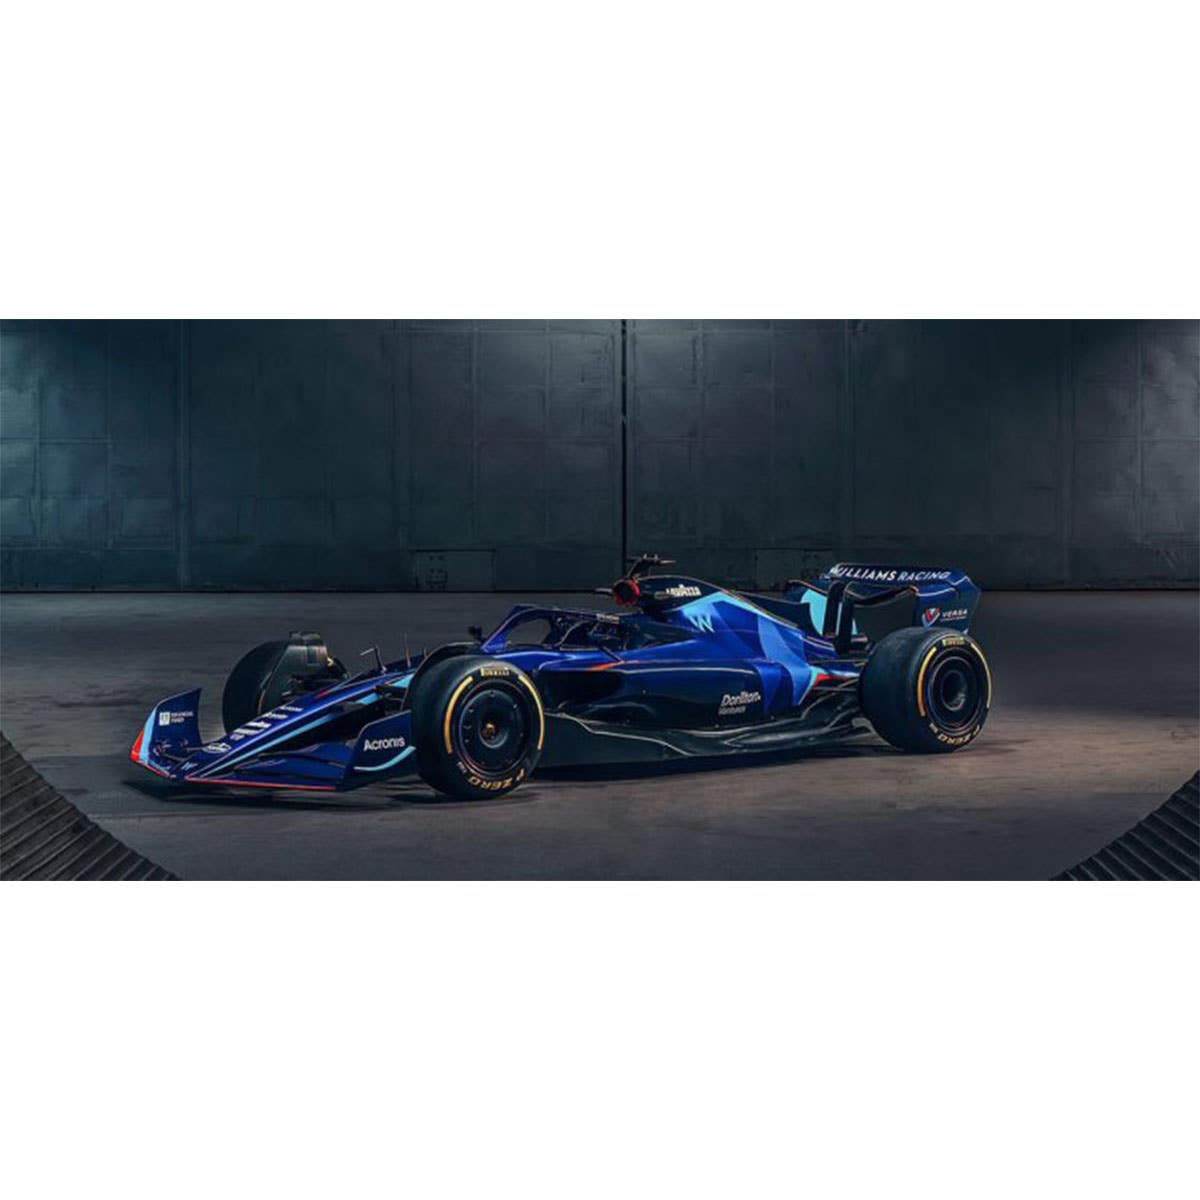 WILLIAMS RACING FW44 - NICHOLAS LATIFI- BAHRAIN GP 2022  - 1:18 Scale Resin Model Car